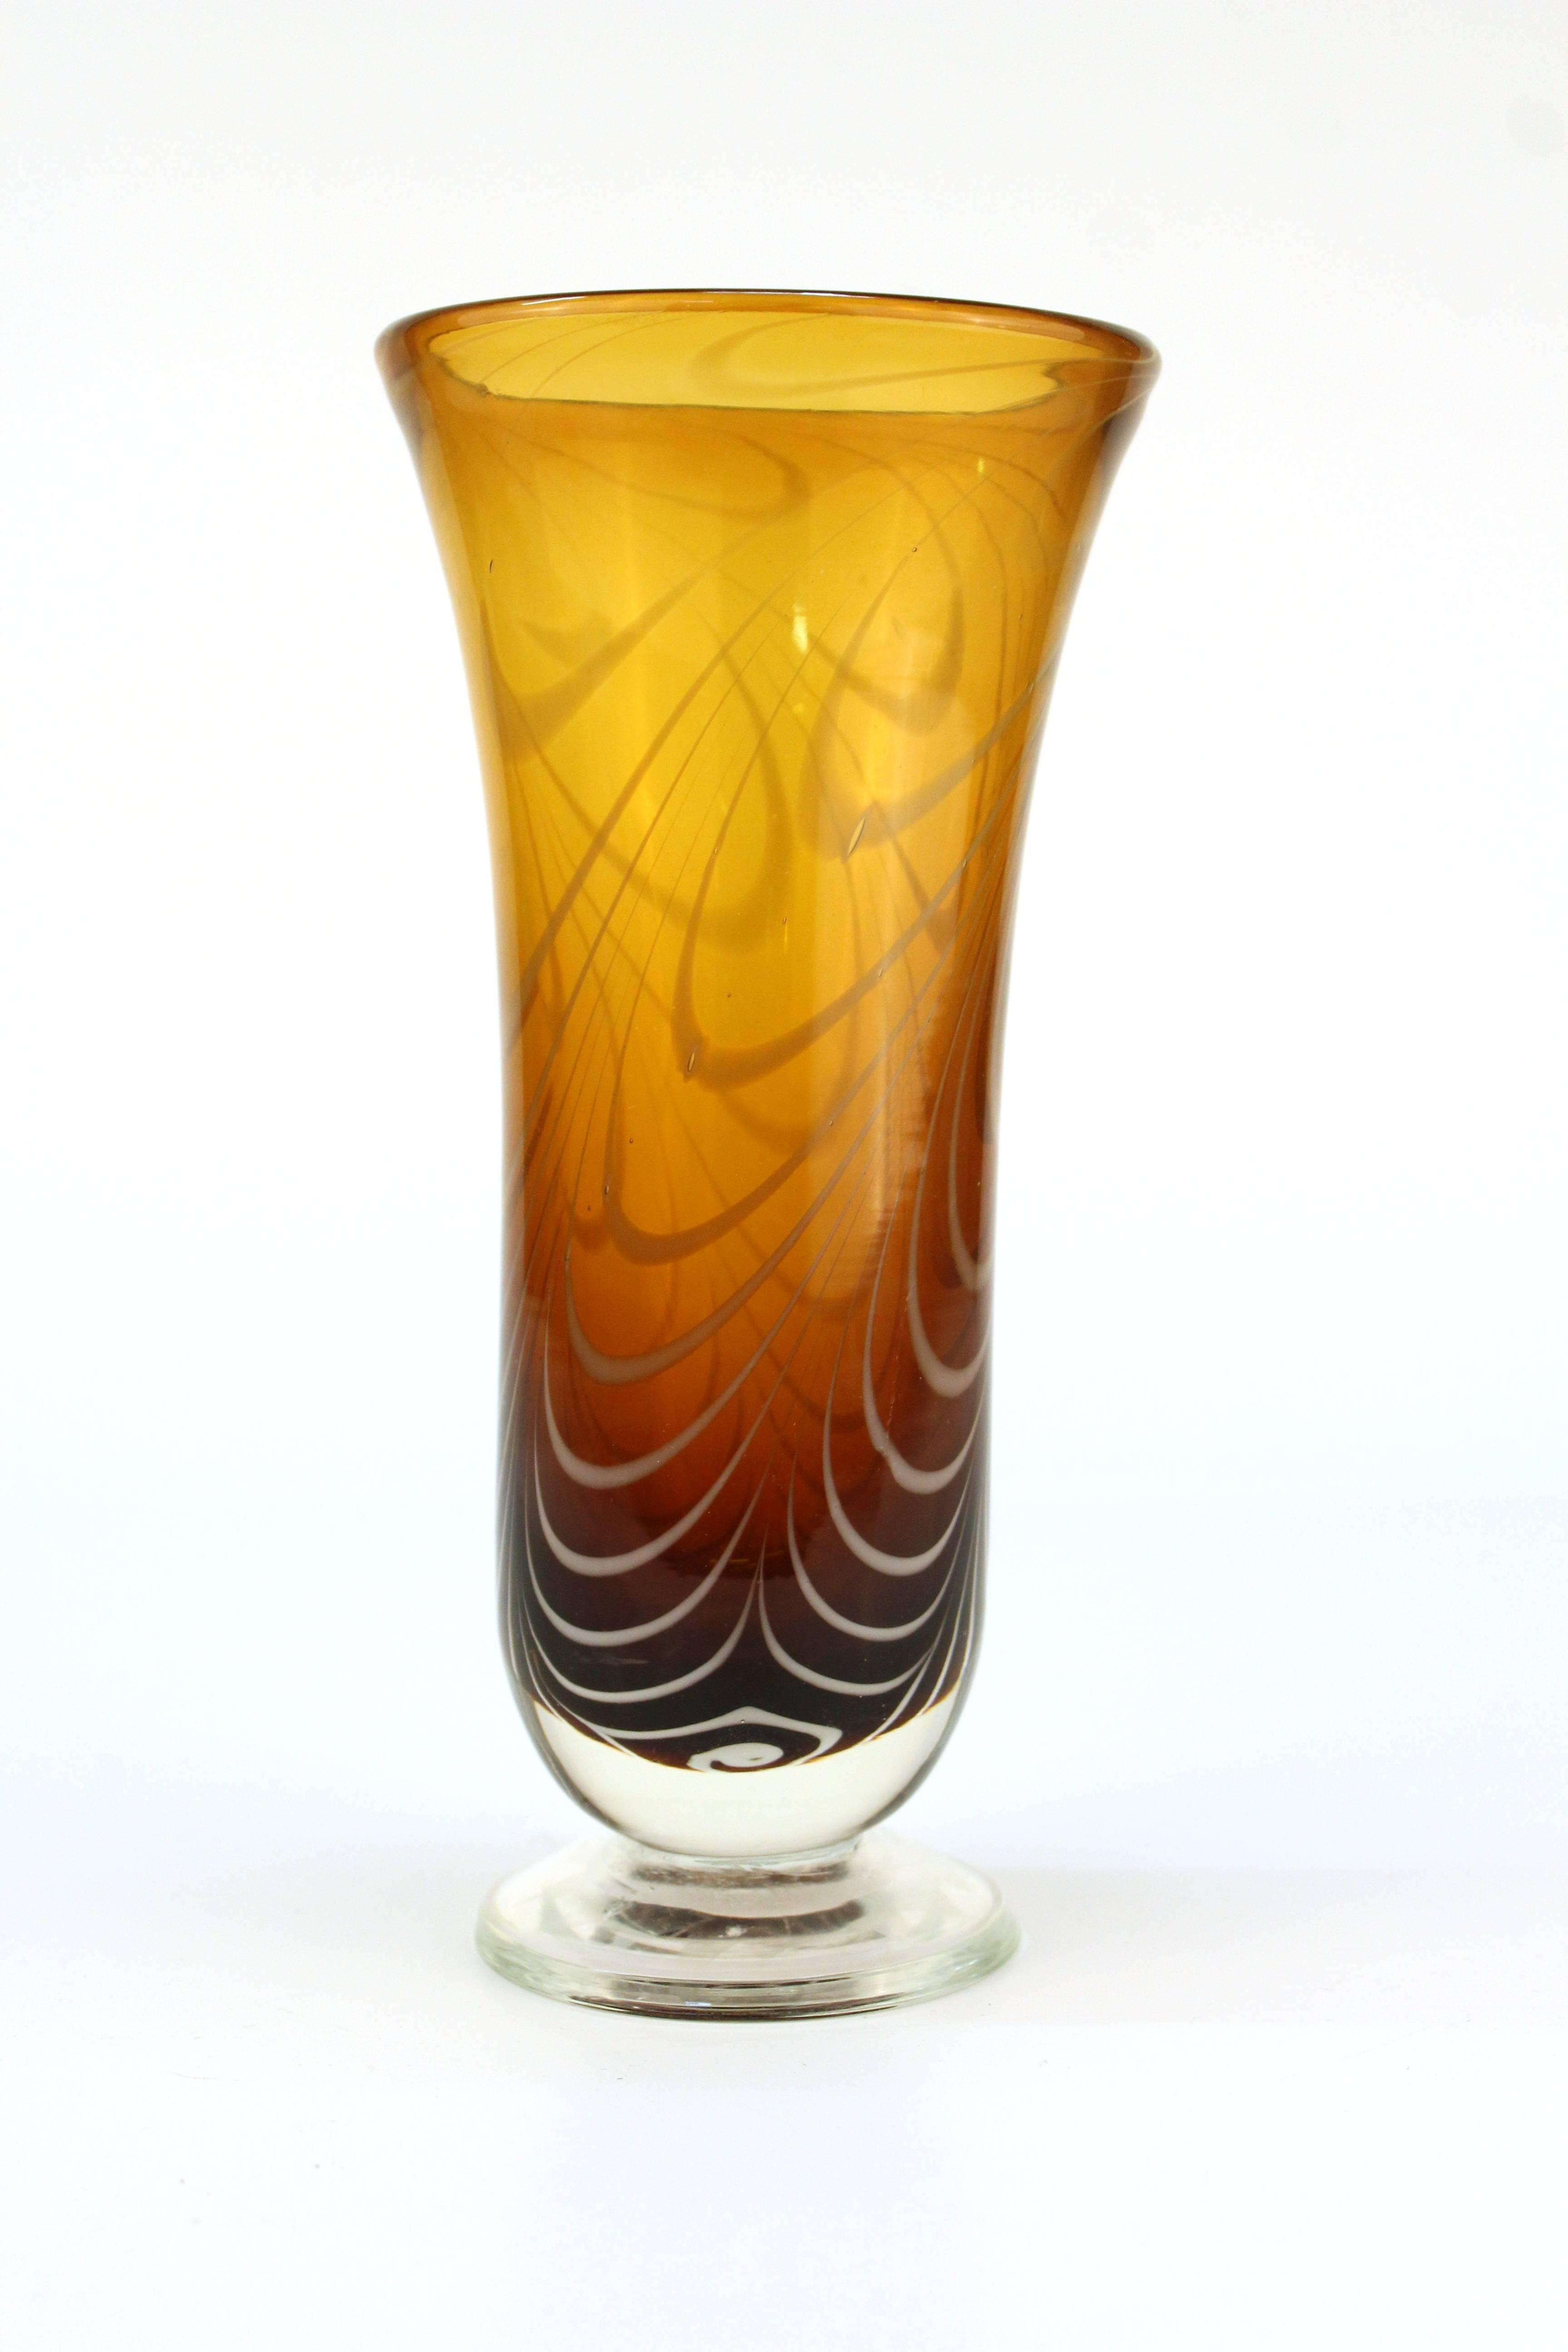 Eine Vintage-Glasvase aus bernsteinfarbenem Kunstglas, kunstvoll verziert mit weißen Strudeln. 

110611

 